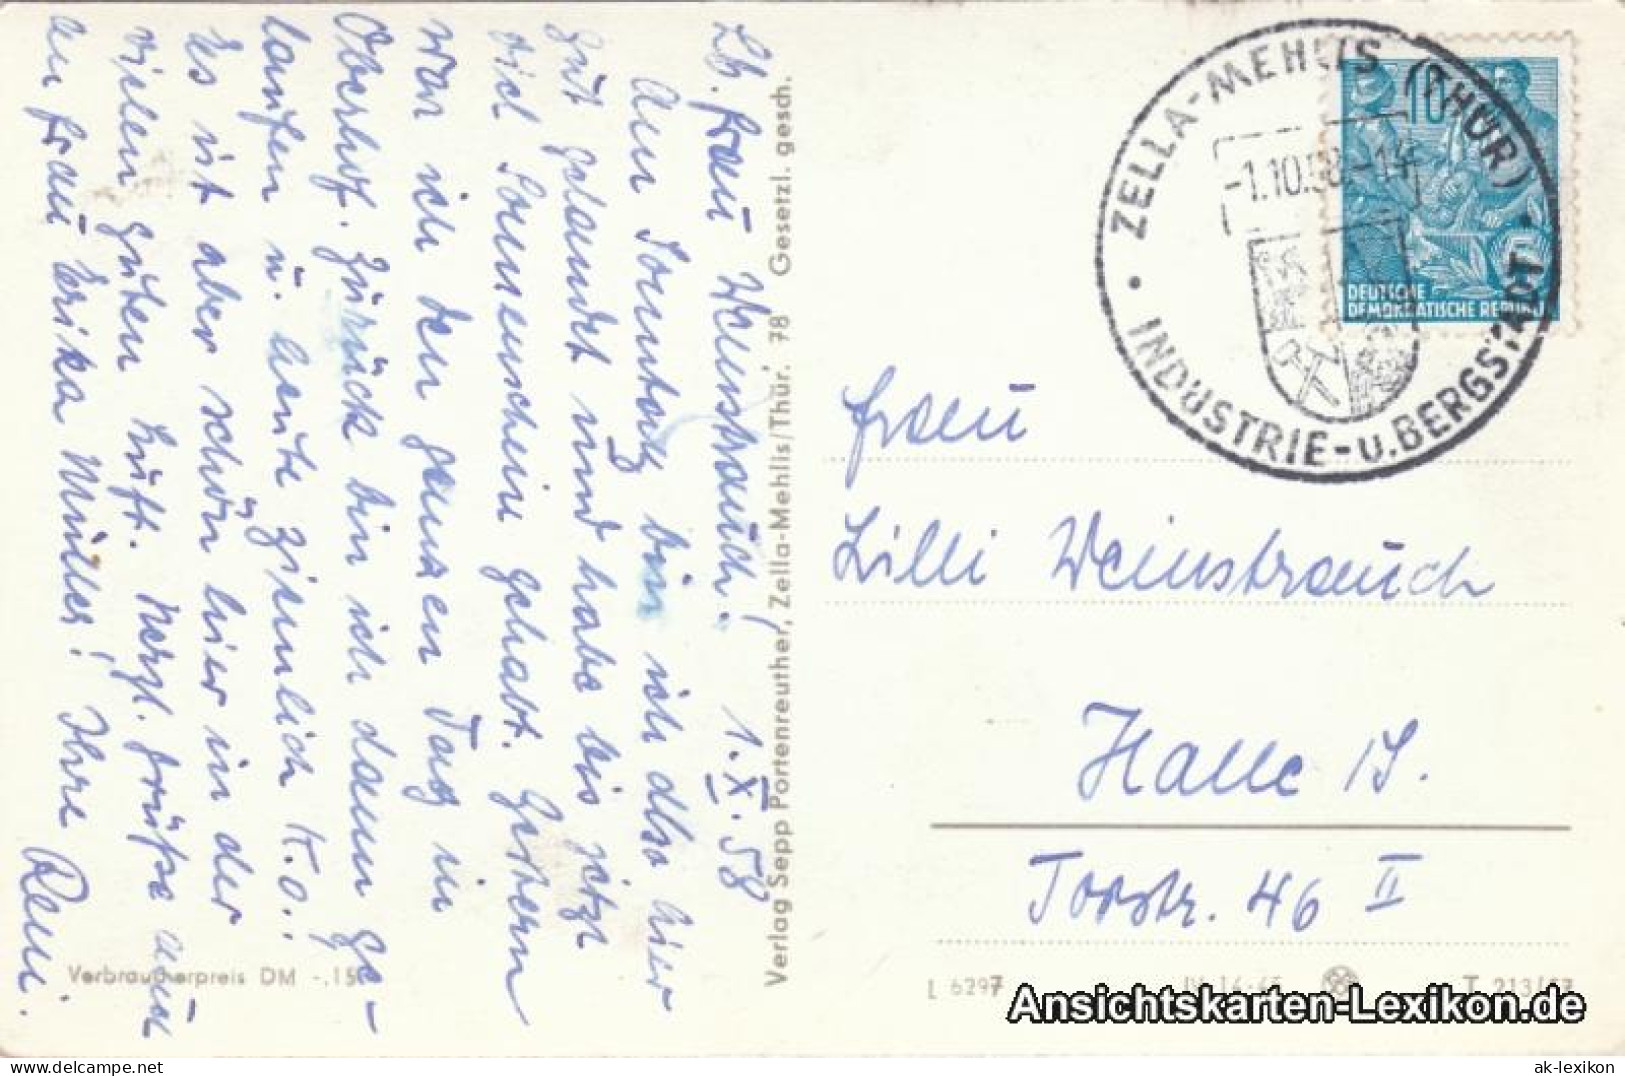 Ansichtskarte Zella-Mehlis Kaltenbrunner Stein Und Blick Auf Die Stadt 1957  - Zella-Mehlis